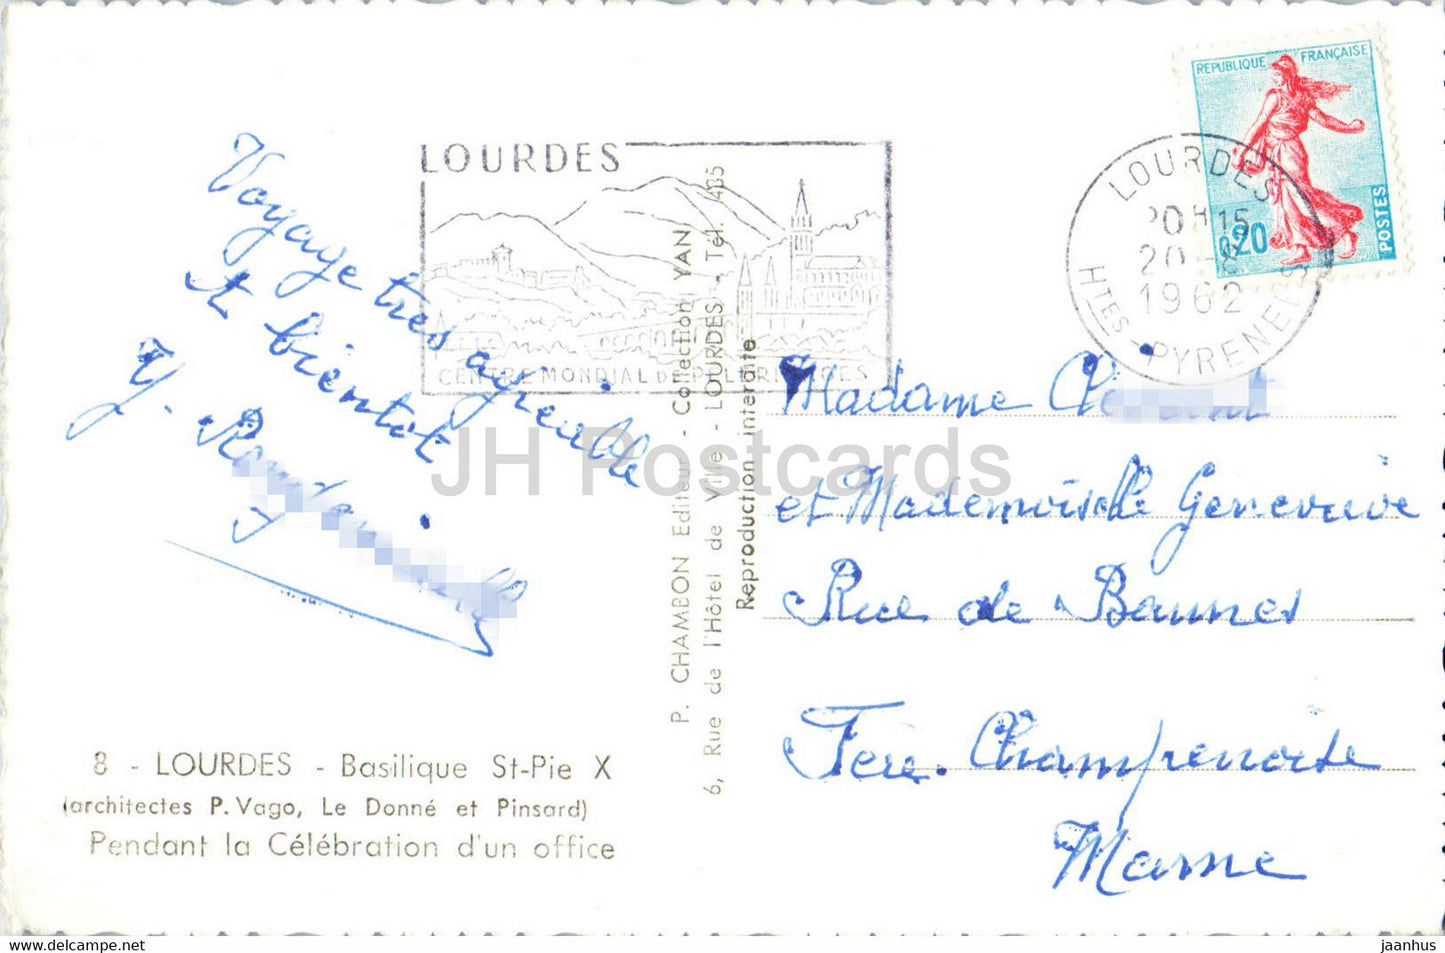 Lourdes - Basilique St Pie X - Pendant la Celebration d'un office - 8 - 1962 - France - used